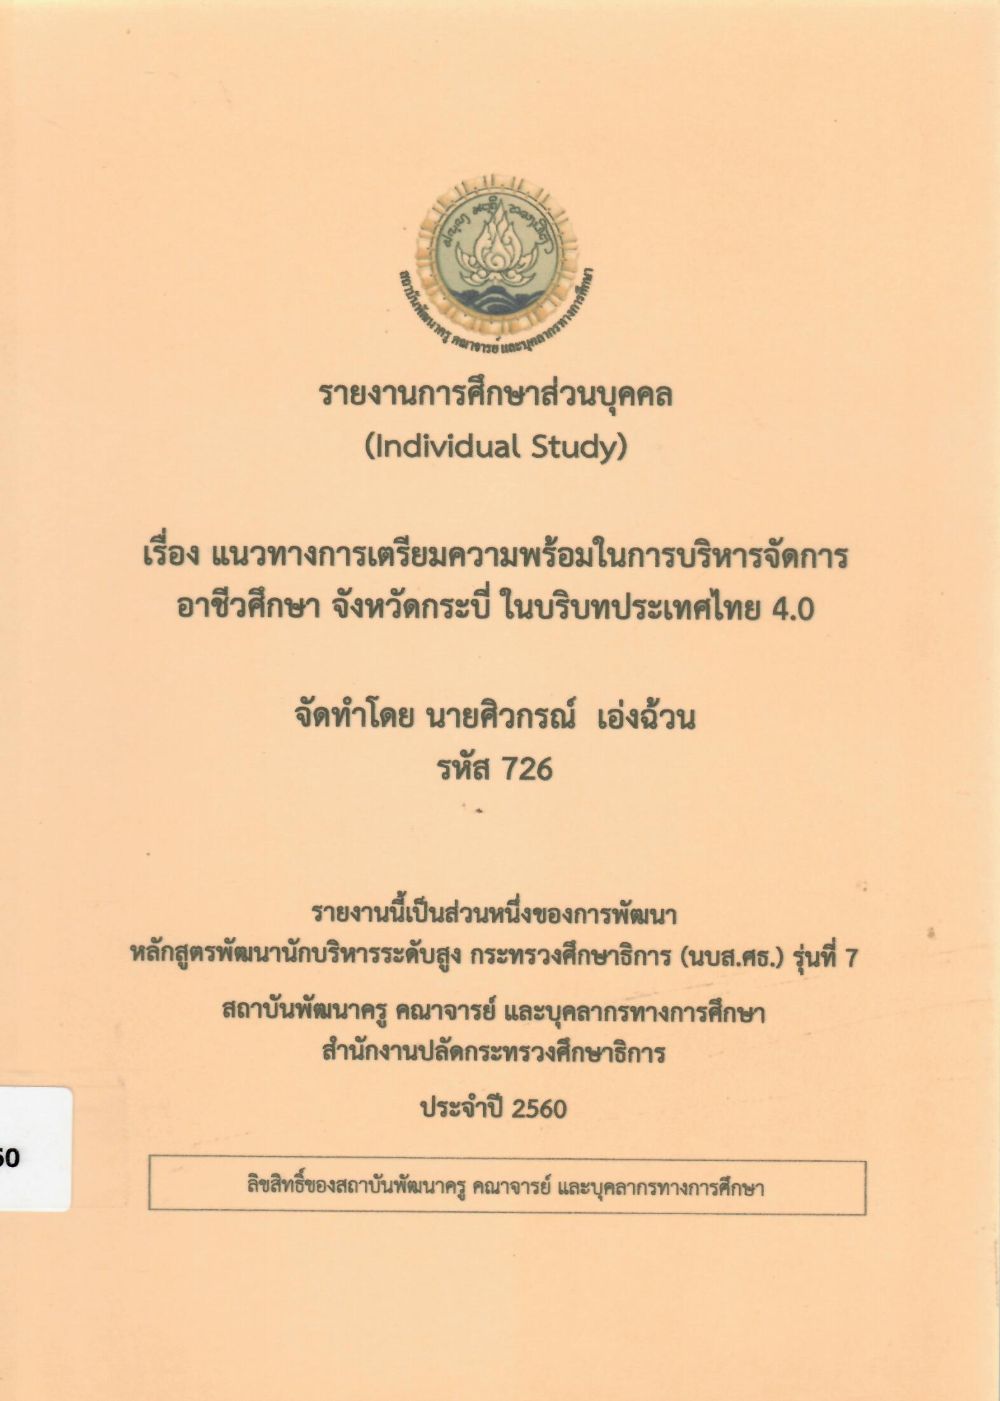 แนวทางการเตรียมความพร้อมในการบริหารจัดการอาชีวศึกษา จังหวัดกระบี่ ในบริบทประเทศไทย 4.0: รายงานการศึกษาส่วนบุคคล (Individual Study)/ ศิวกรณ์ เอ่งฉ้วน